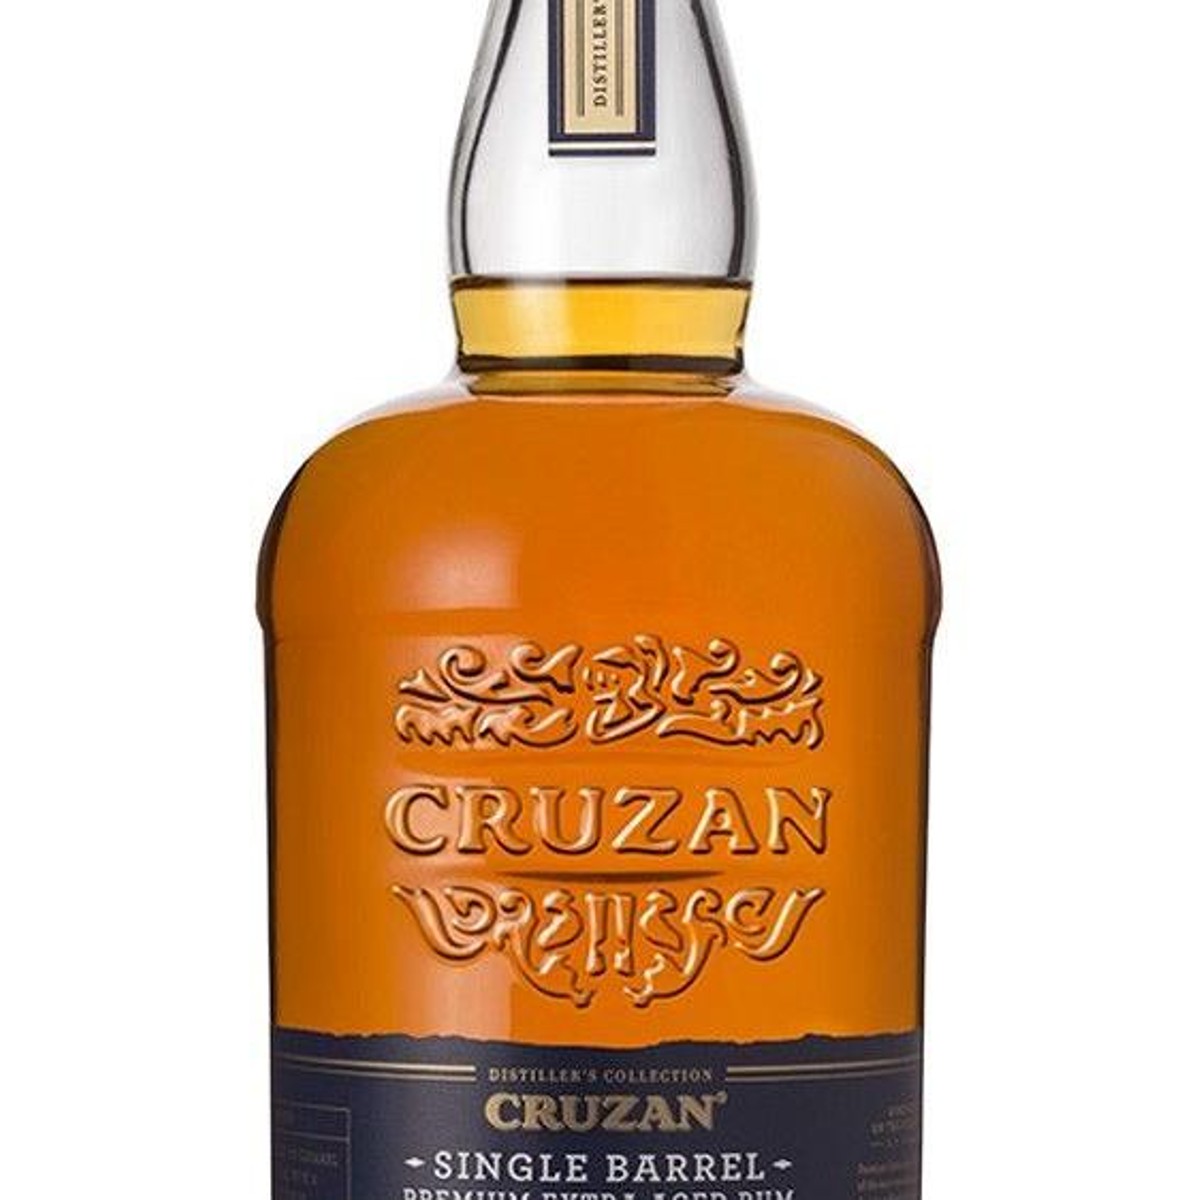 Monkey Shoulder - 'The Original' Blended Malt Scotch Whisky (1.75L) - The  Epicurean Trader